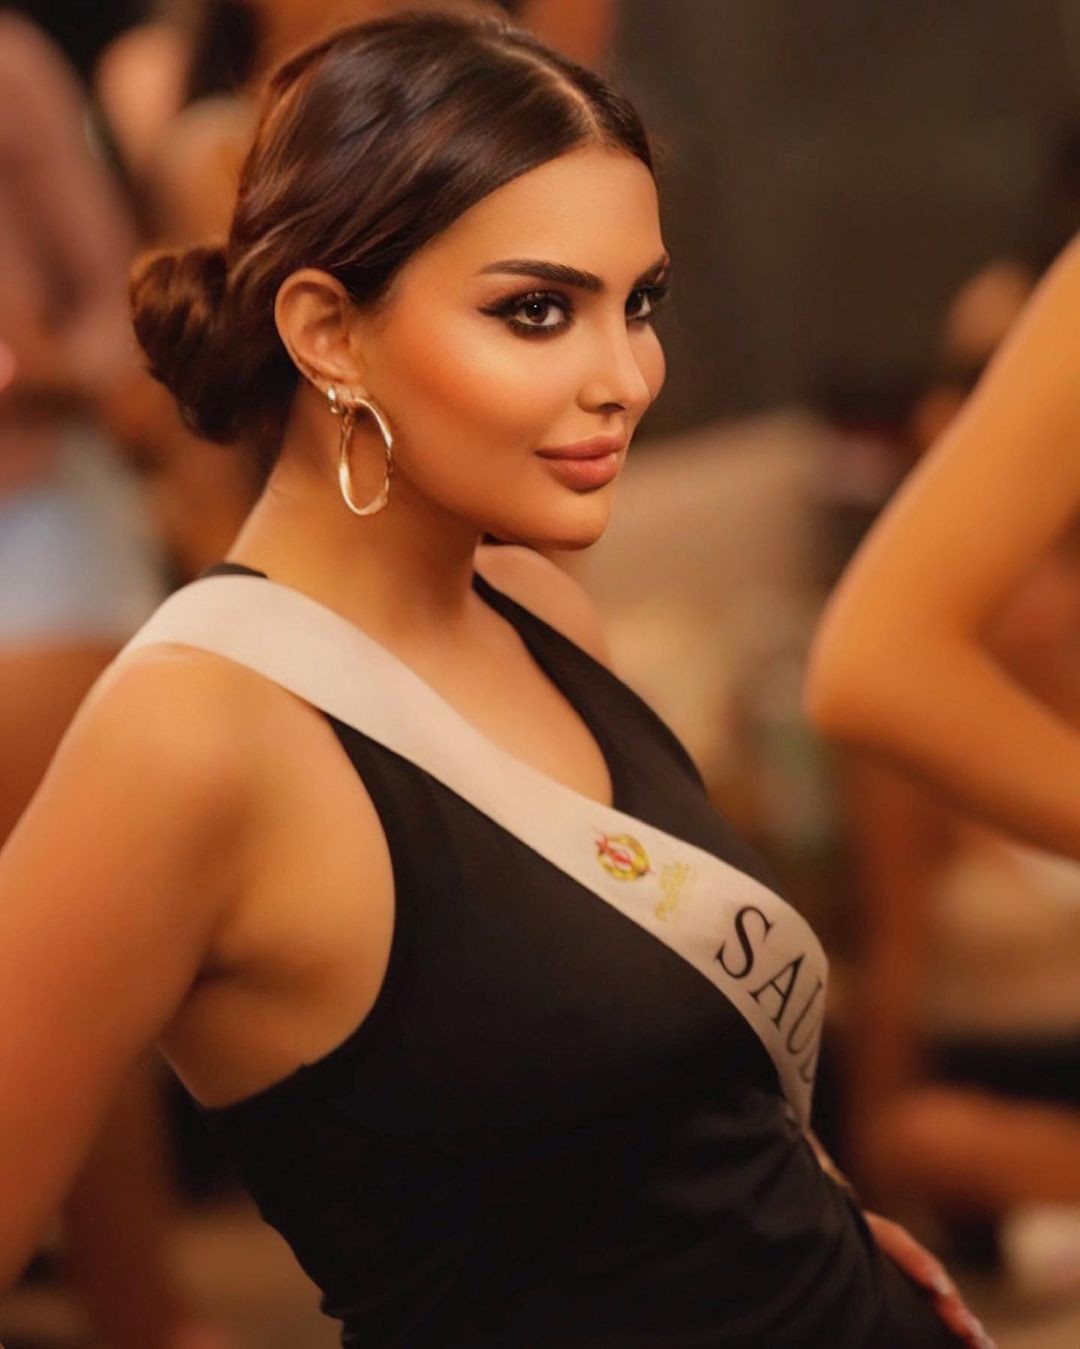 Nhan sắc gây tranh cãi của người đẹp Saudi Arabia đầu tiên thi Hoa hậu Hoàn vũ ảnh 22